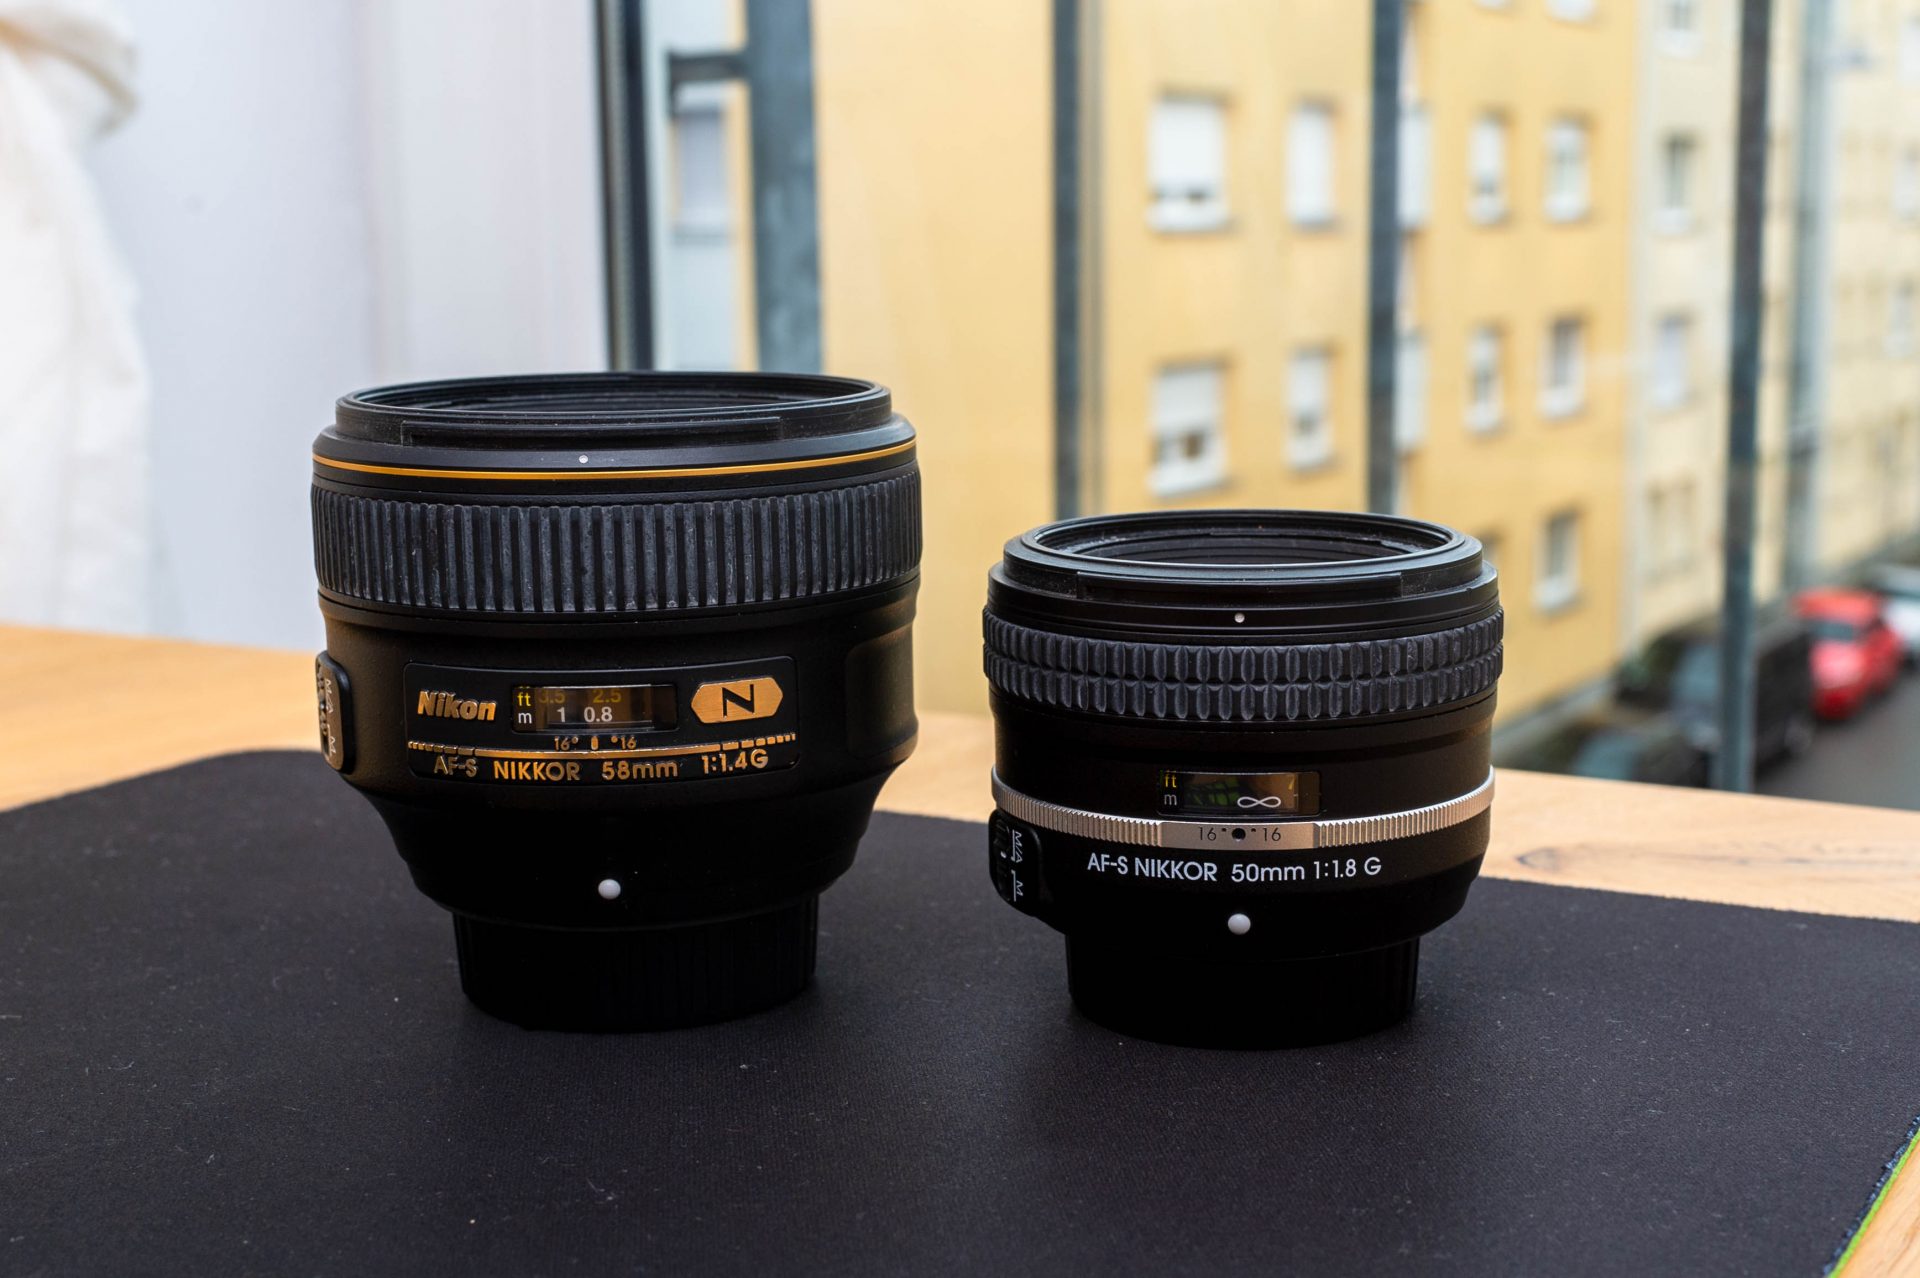 Größenvergleich Nikon AF-S Nikkor 58mm f/1.4 G und Nikon AF-S Nikkor 50mm f/1.8 G SE